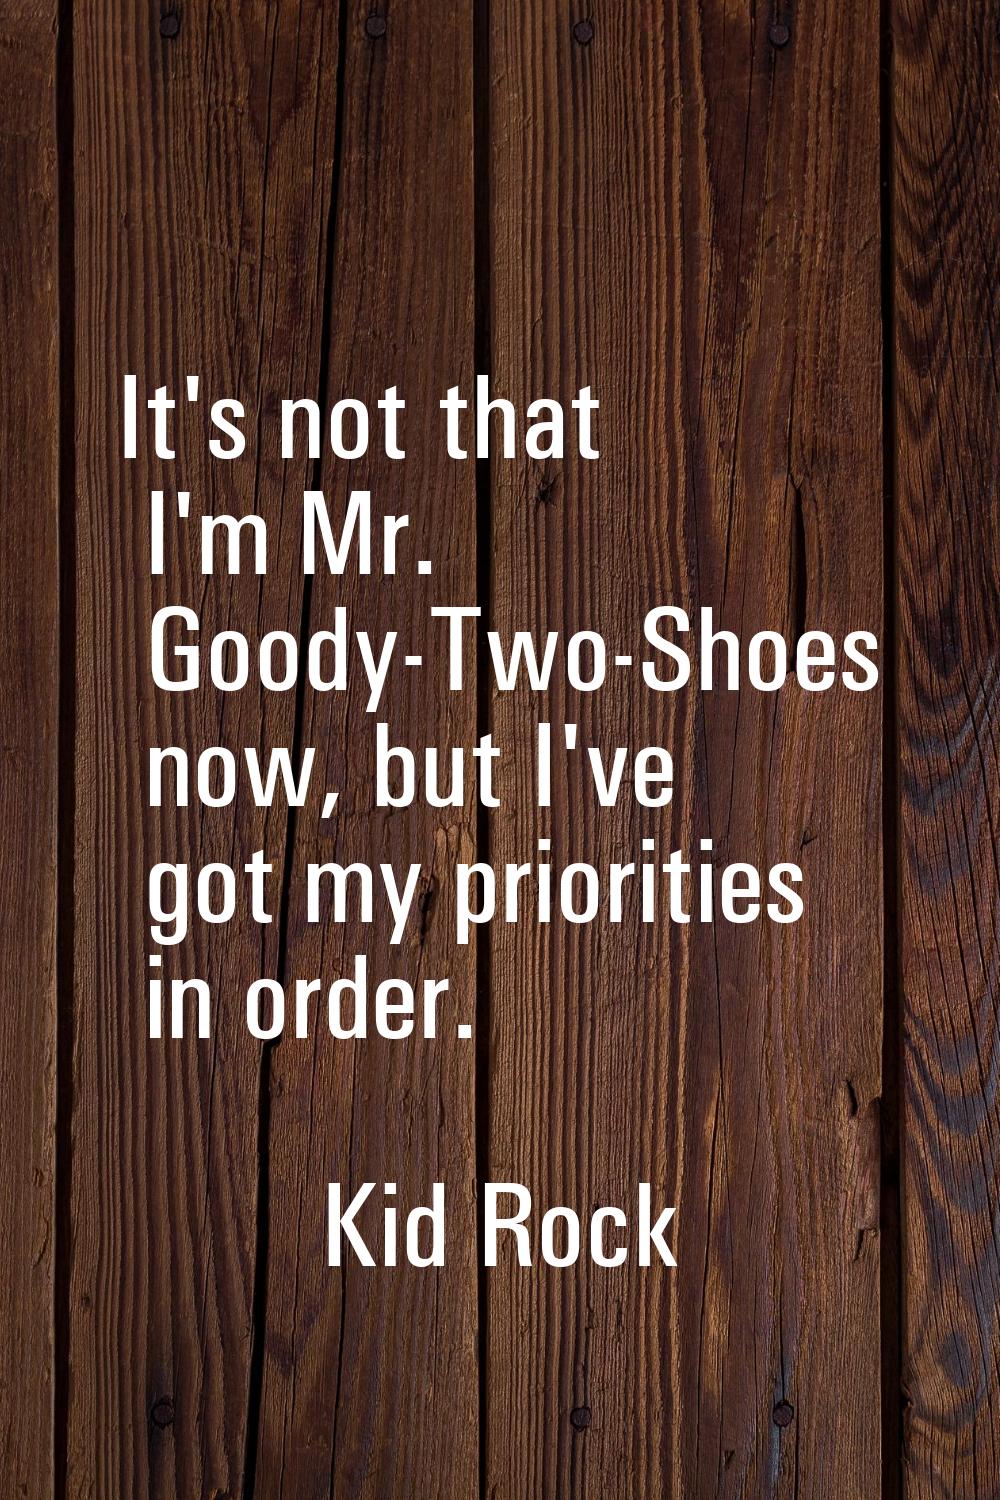 It's not that I'm Mr. Goody-Two-Shoes now, but I've got my priorities in order.